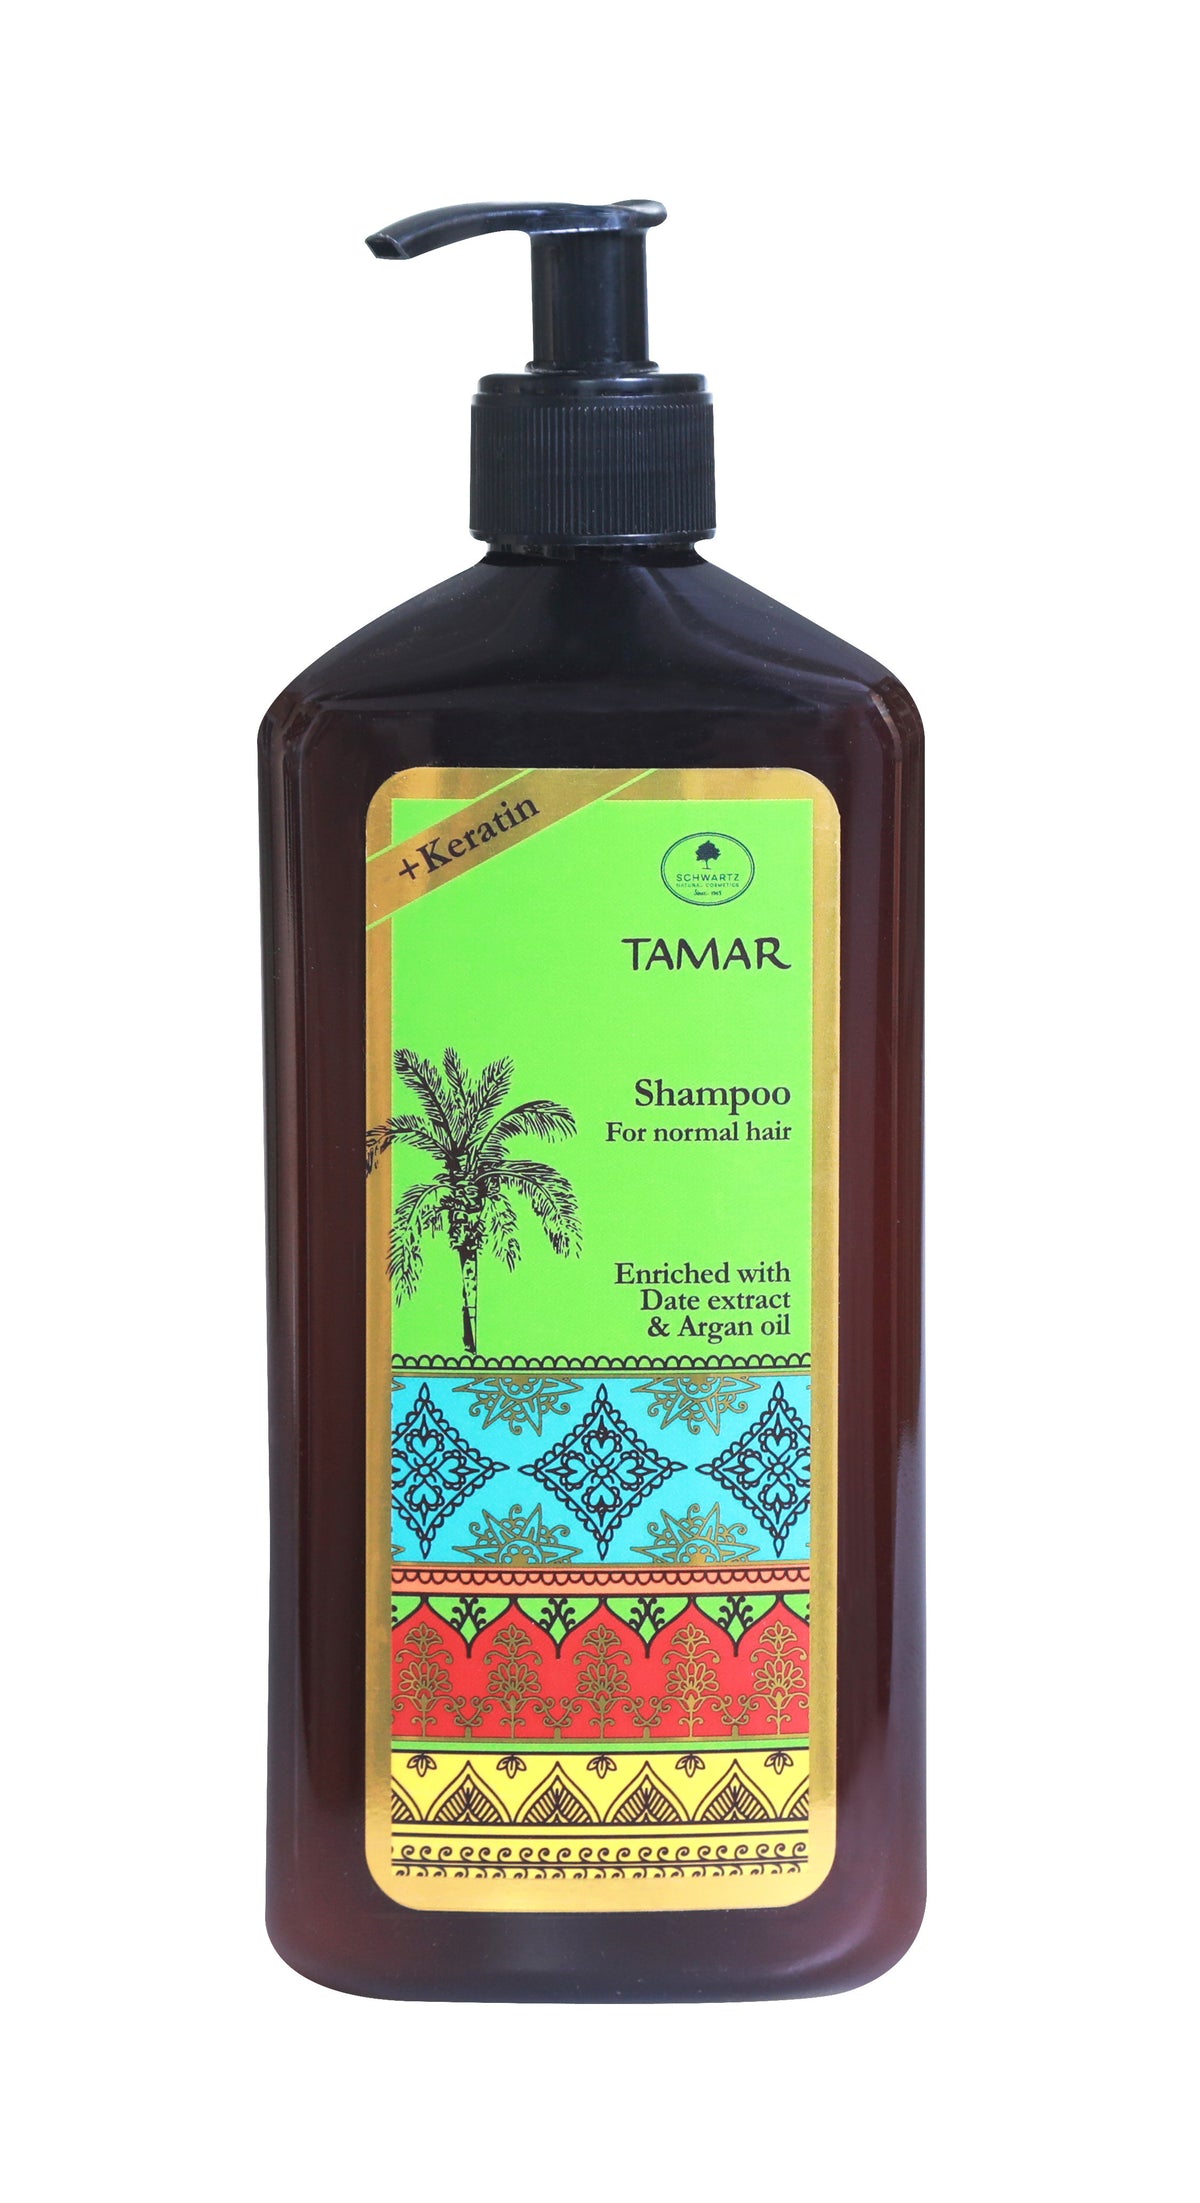 Tamar - shampoo for normal hair